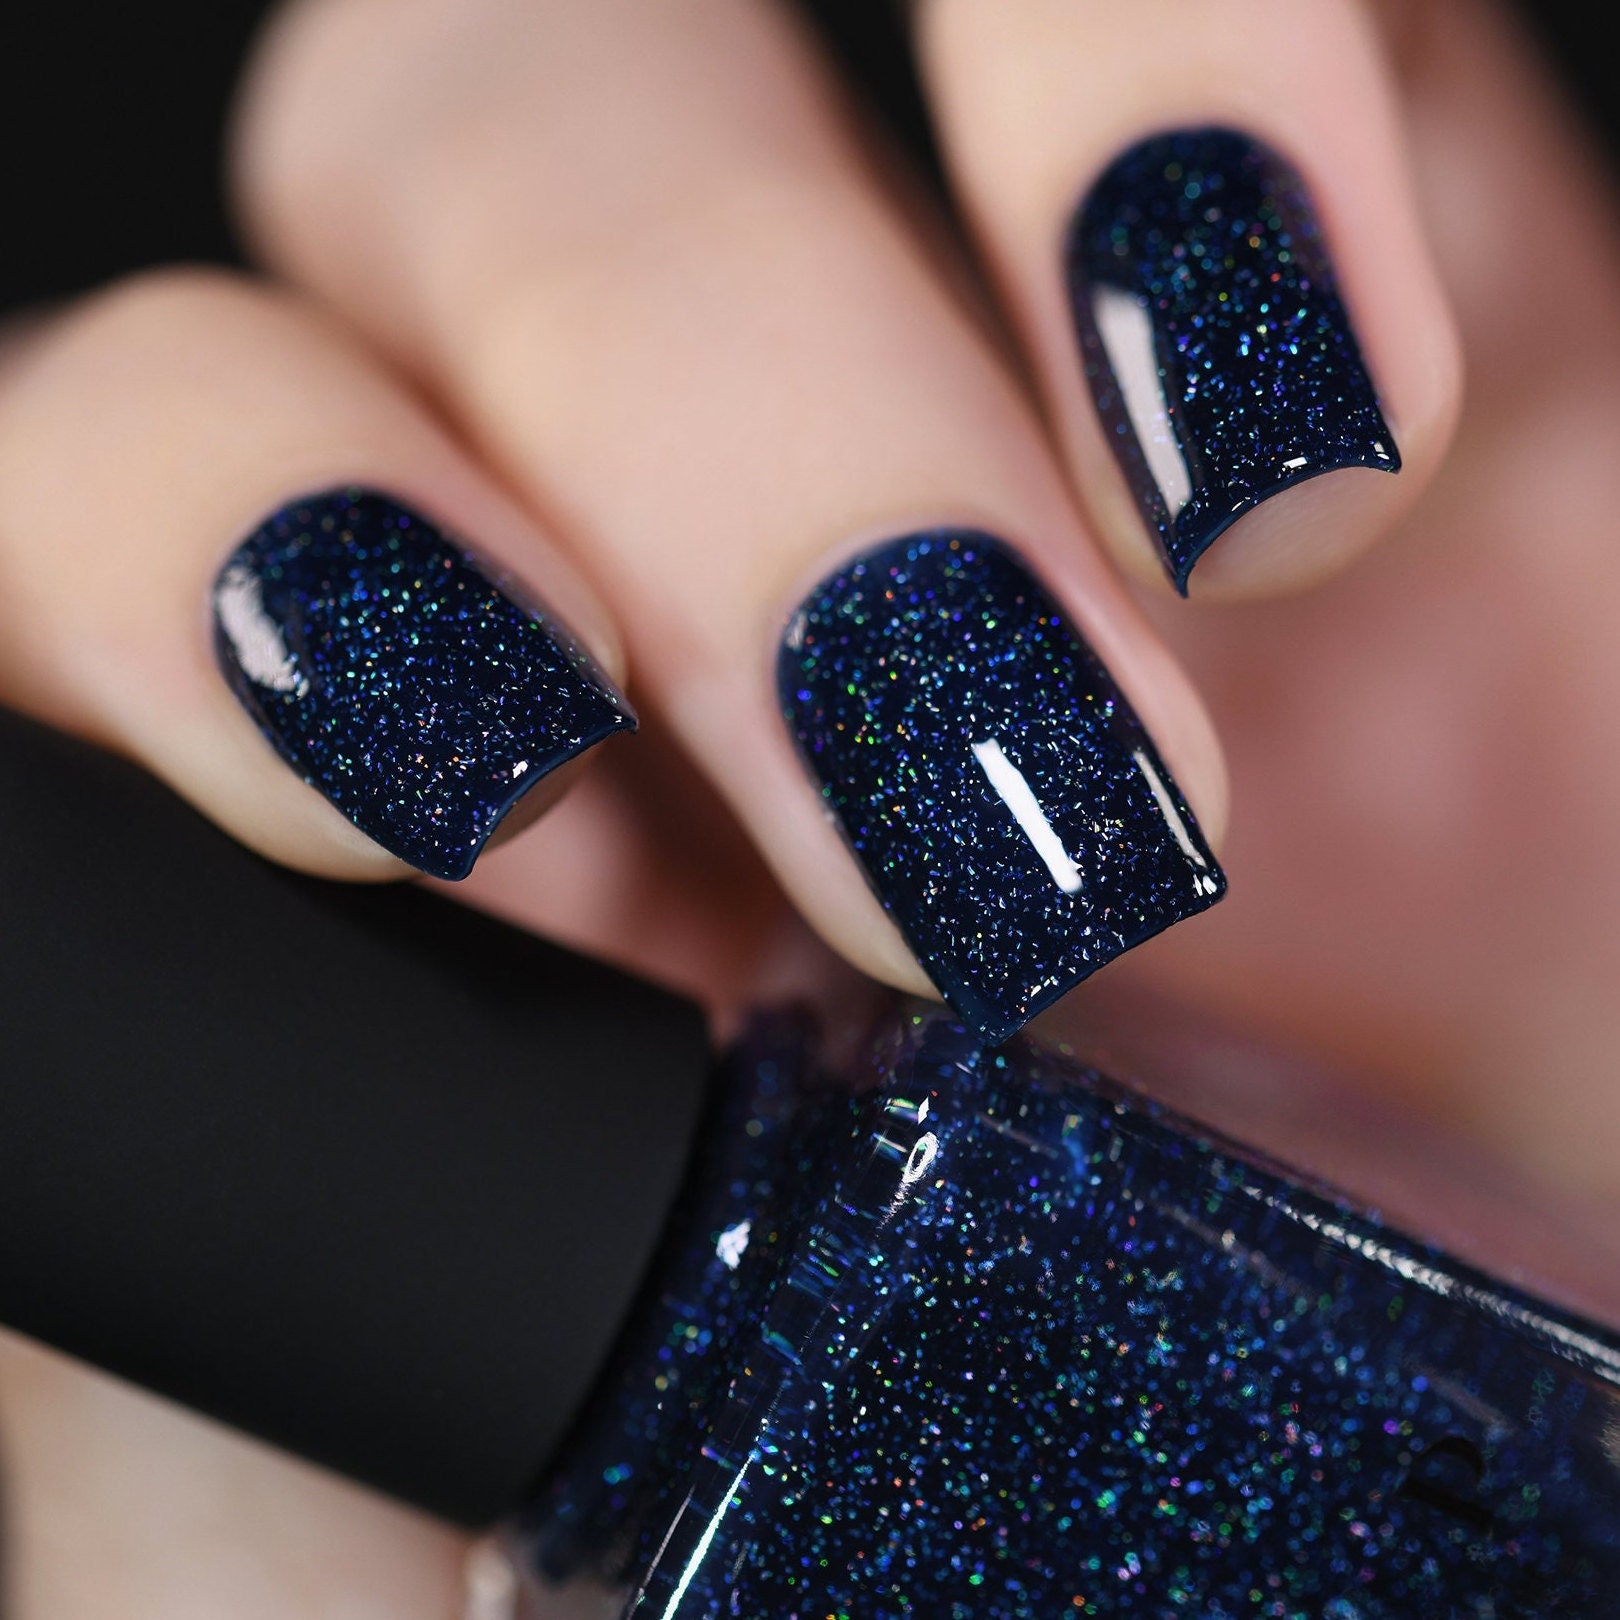 How to make dark blue nail polish at home - Quora